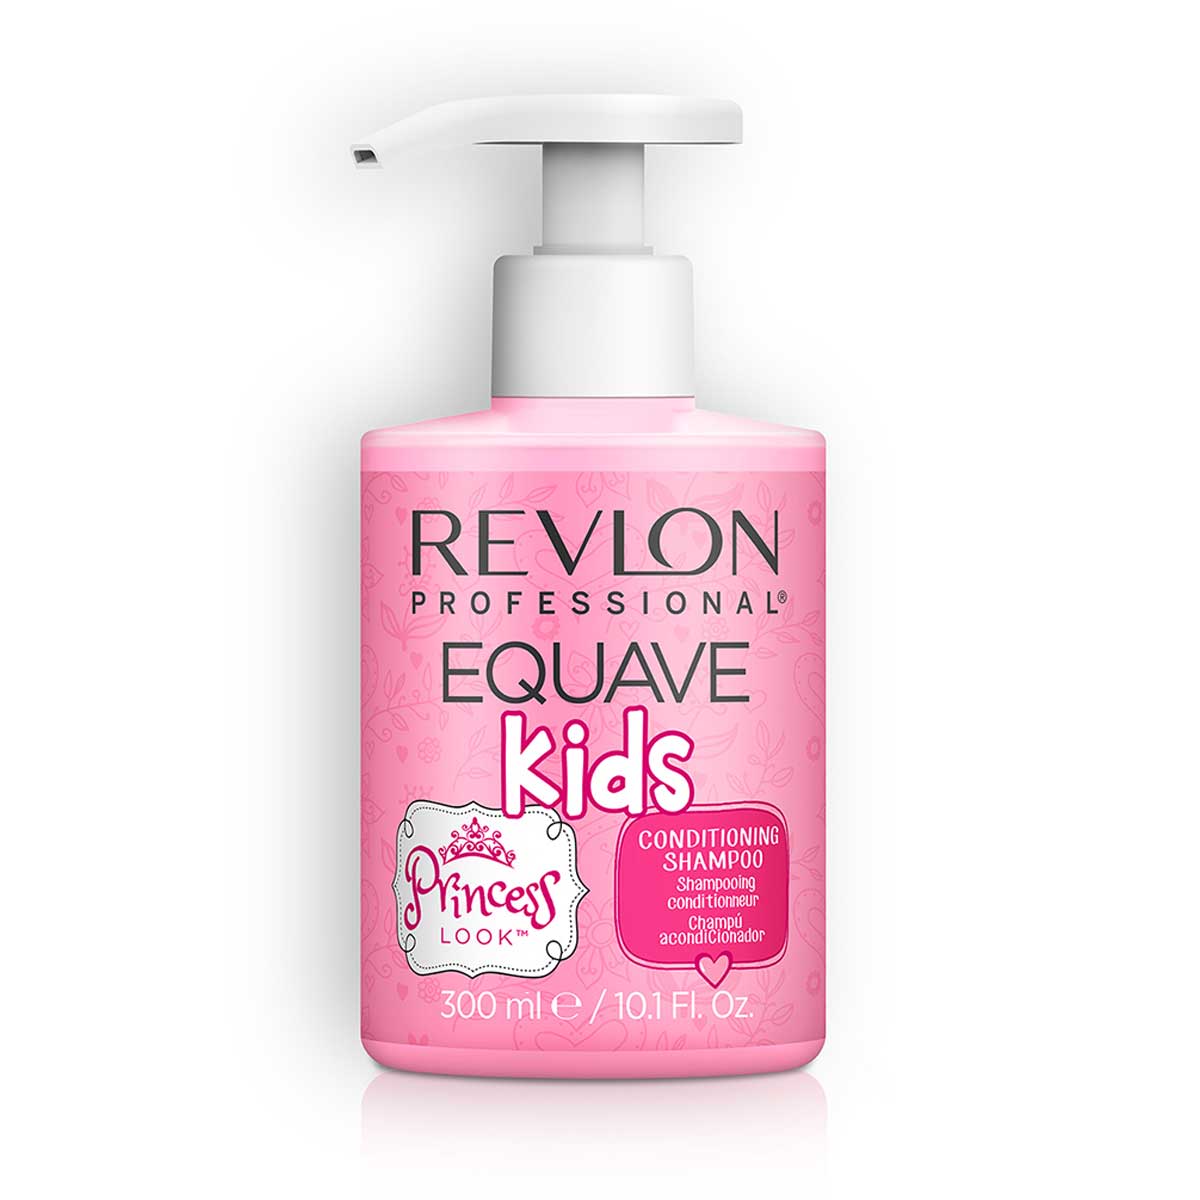 Onderscheiden vervolging Beweging Revlon Equave Kids Princess Look 2-in-1 Shampoo 300ml online kopen?  Professionele Revlon Haarverzorging